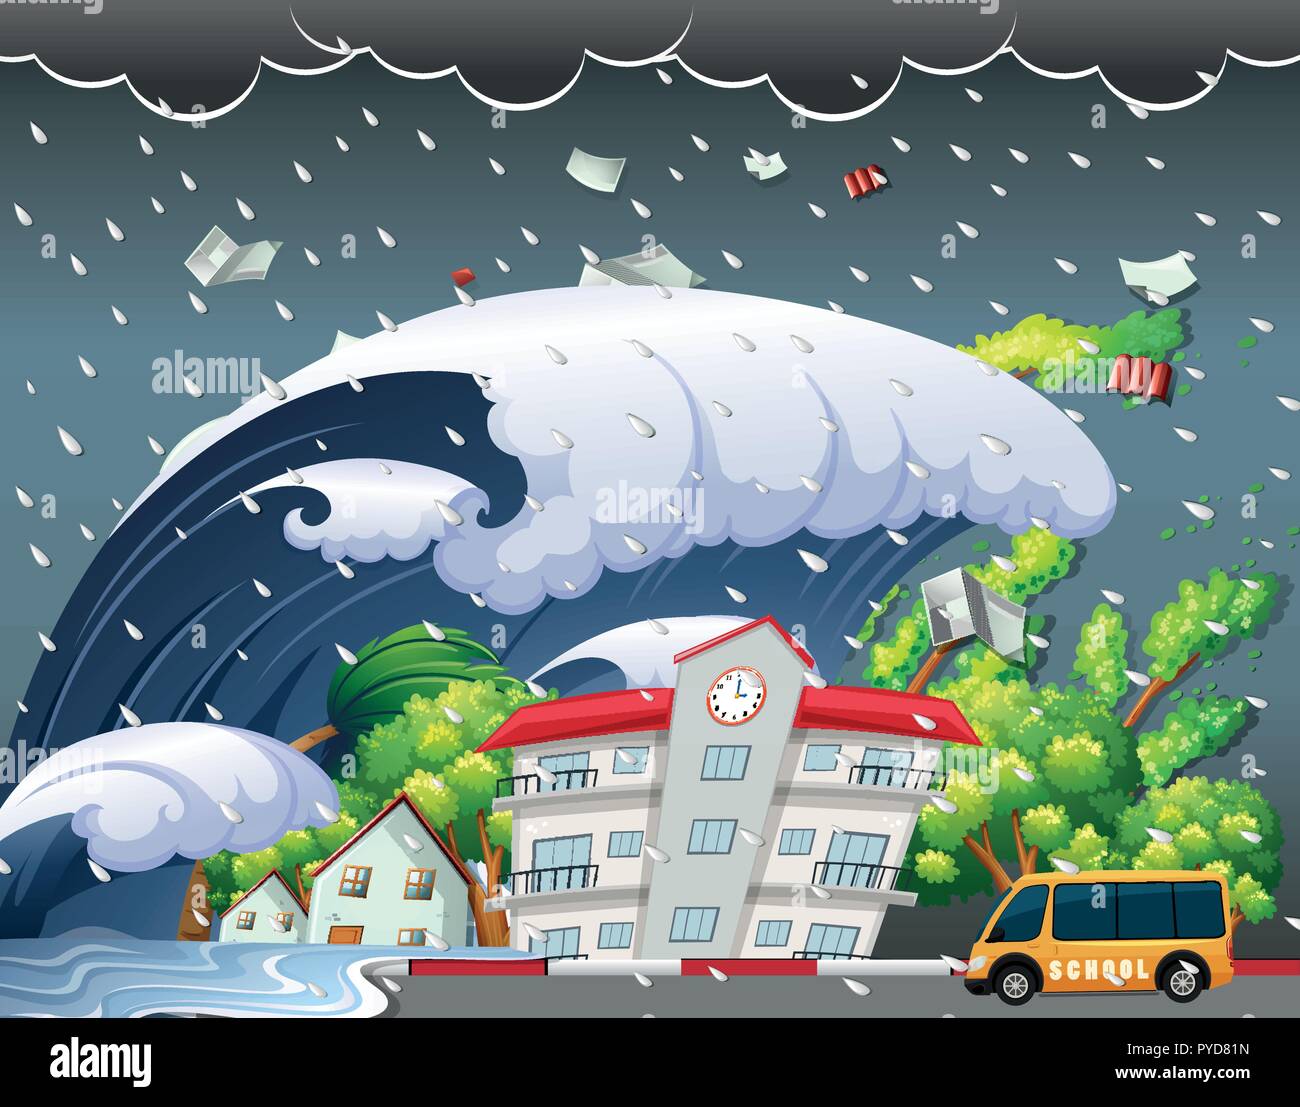 Tsunami a frappé bâtiment scolaire illustration Illustration de Vecteur